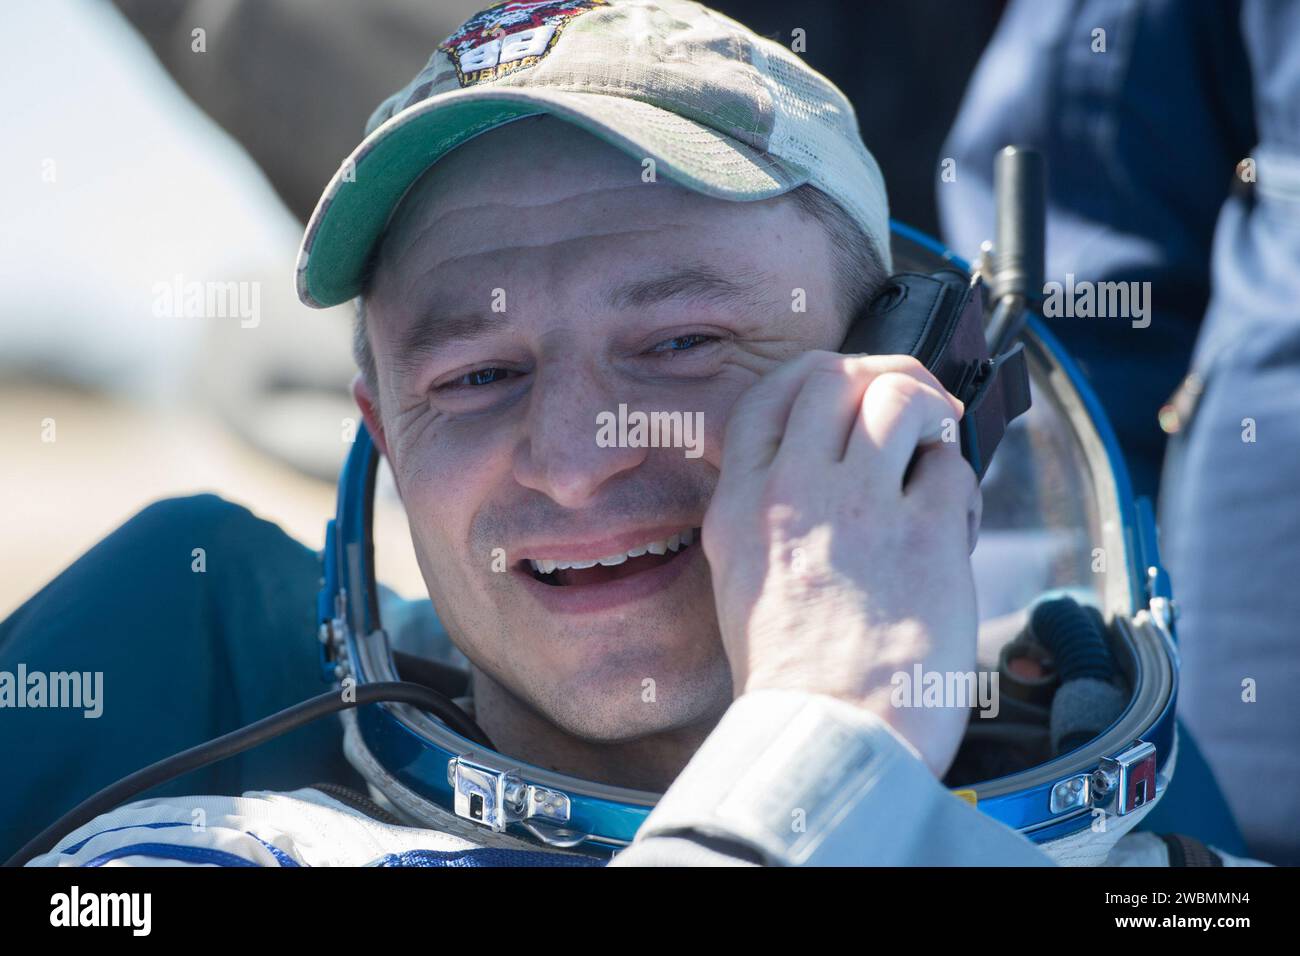 Der Astronaut Andrew Morgan der Expedition 62 spricht auf dem Satellitentelefon vor der Raumsonde Sojus MS-15, nachdem er am Freitag, den 17. April 2020, mit dem NASA-Astronauten Jessica Meir und dem Kosmonauten Oleg Skripochka in einer abgelegenen Gegend in der Nähe der Stadt Zhezkazgan in Kasachstan landete. Meir und Skripochka kehrten nach 205 Tagen im Weltraum zurück, Morgan nach 272 Tagen im Weltraum. Alle drei waren als Besatzungsmitglieder der Expedition 60 an Bord der Internationalen Raumstation. Stockfoto